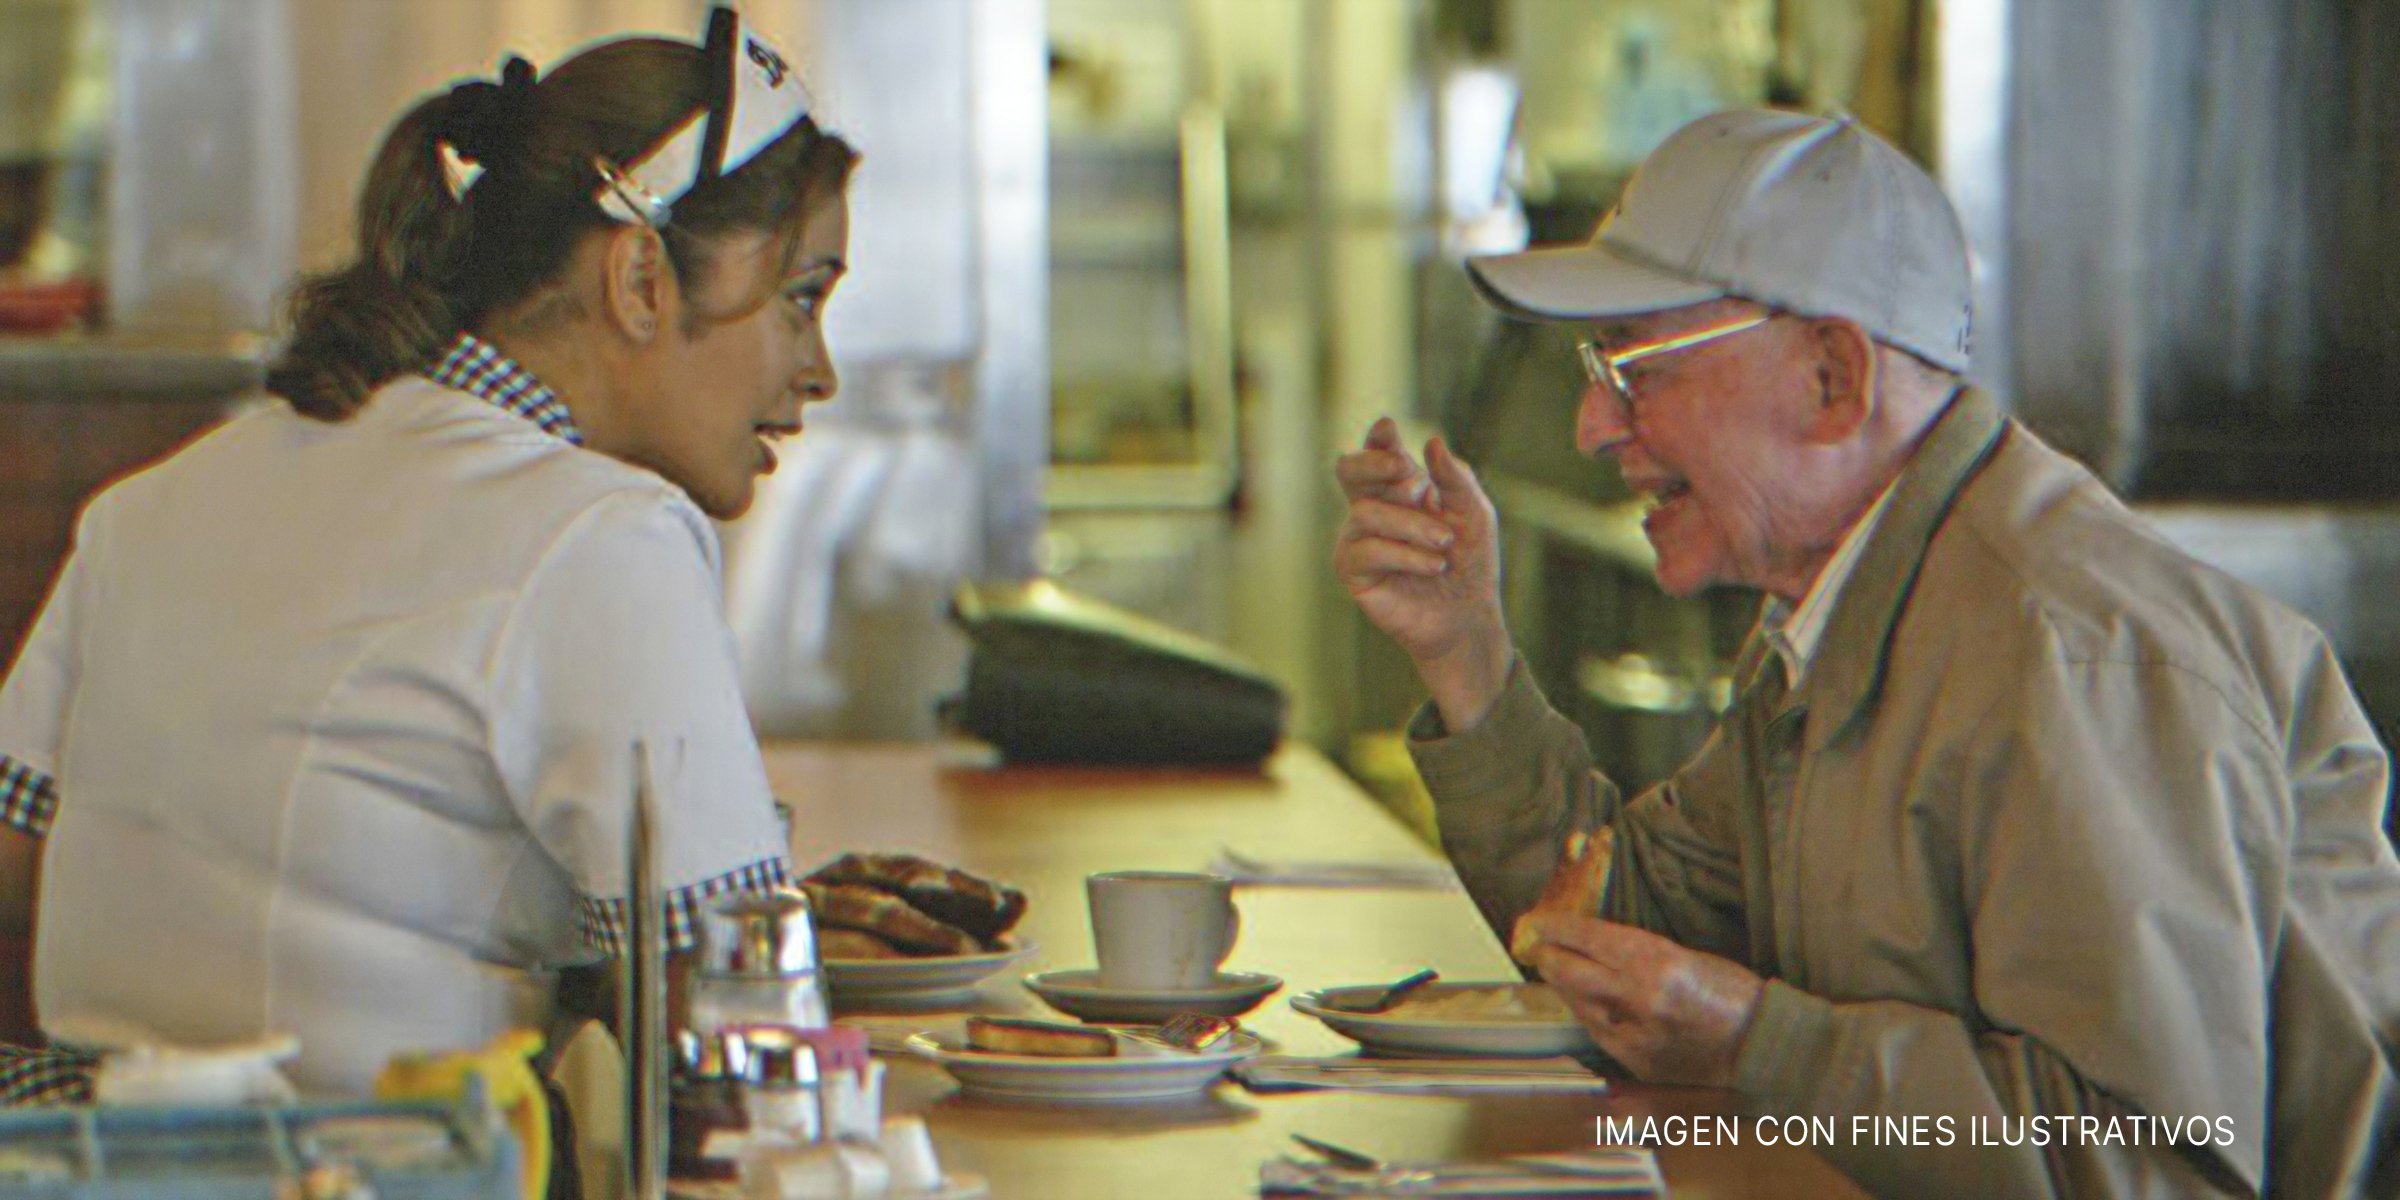 Camarera hablando con un anciano | Foto: Getty Images